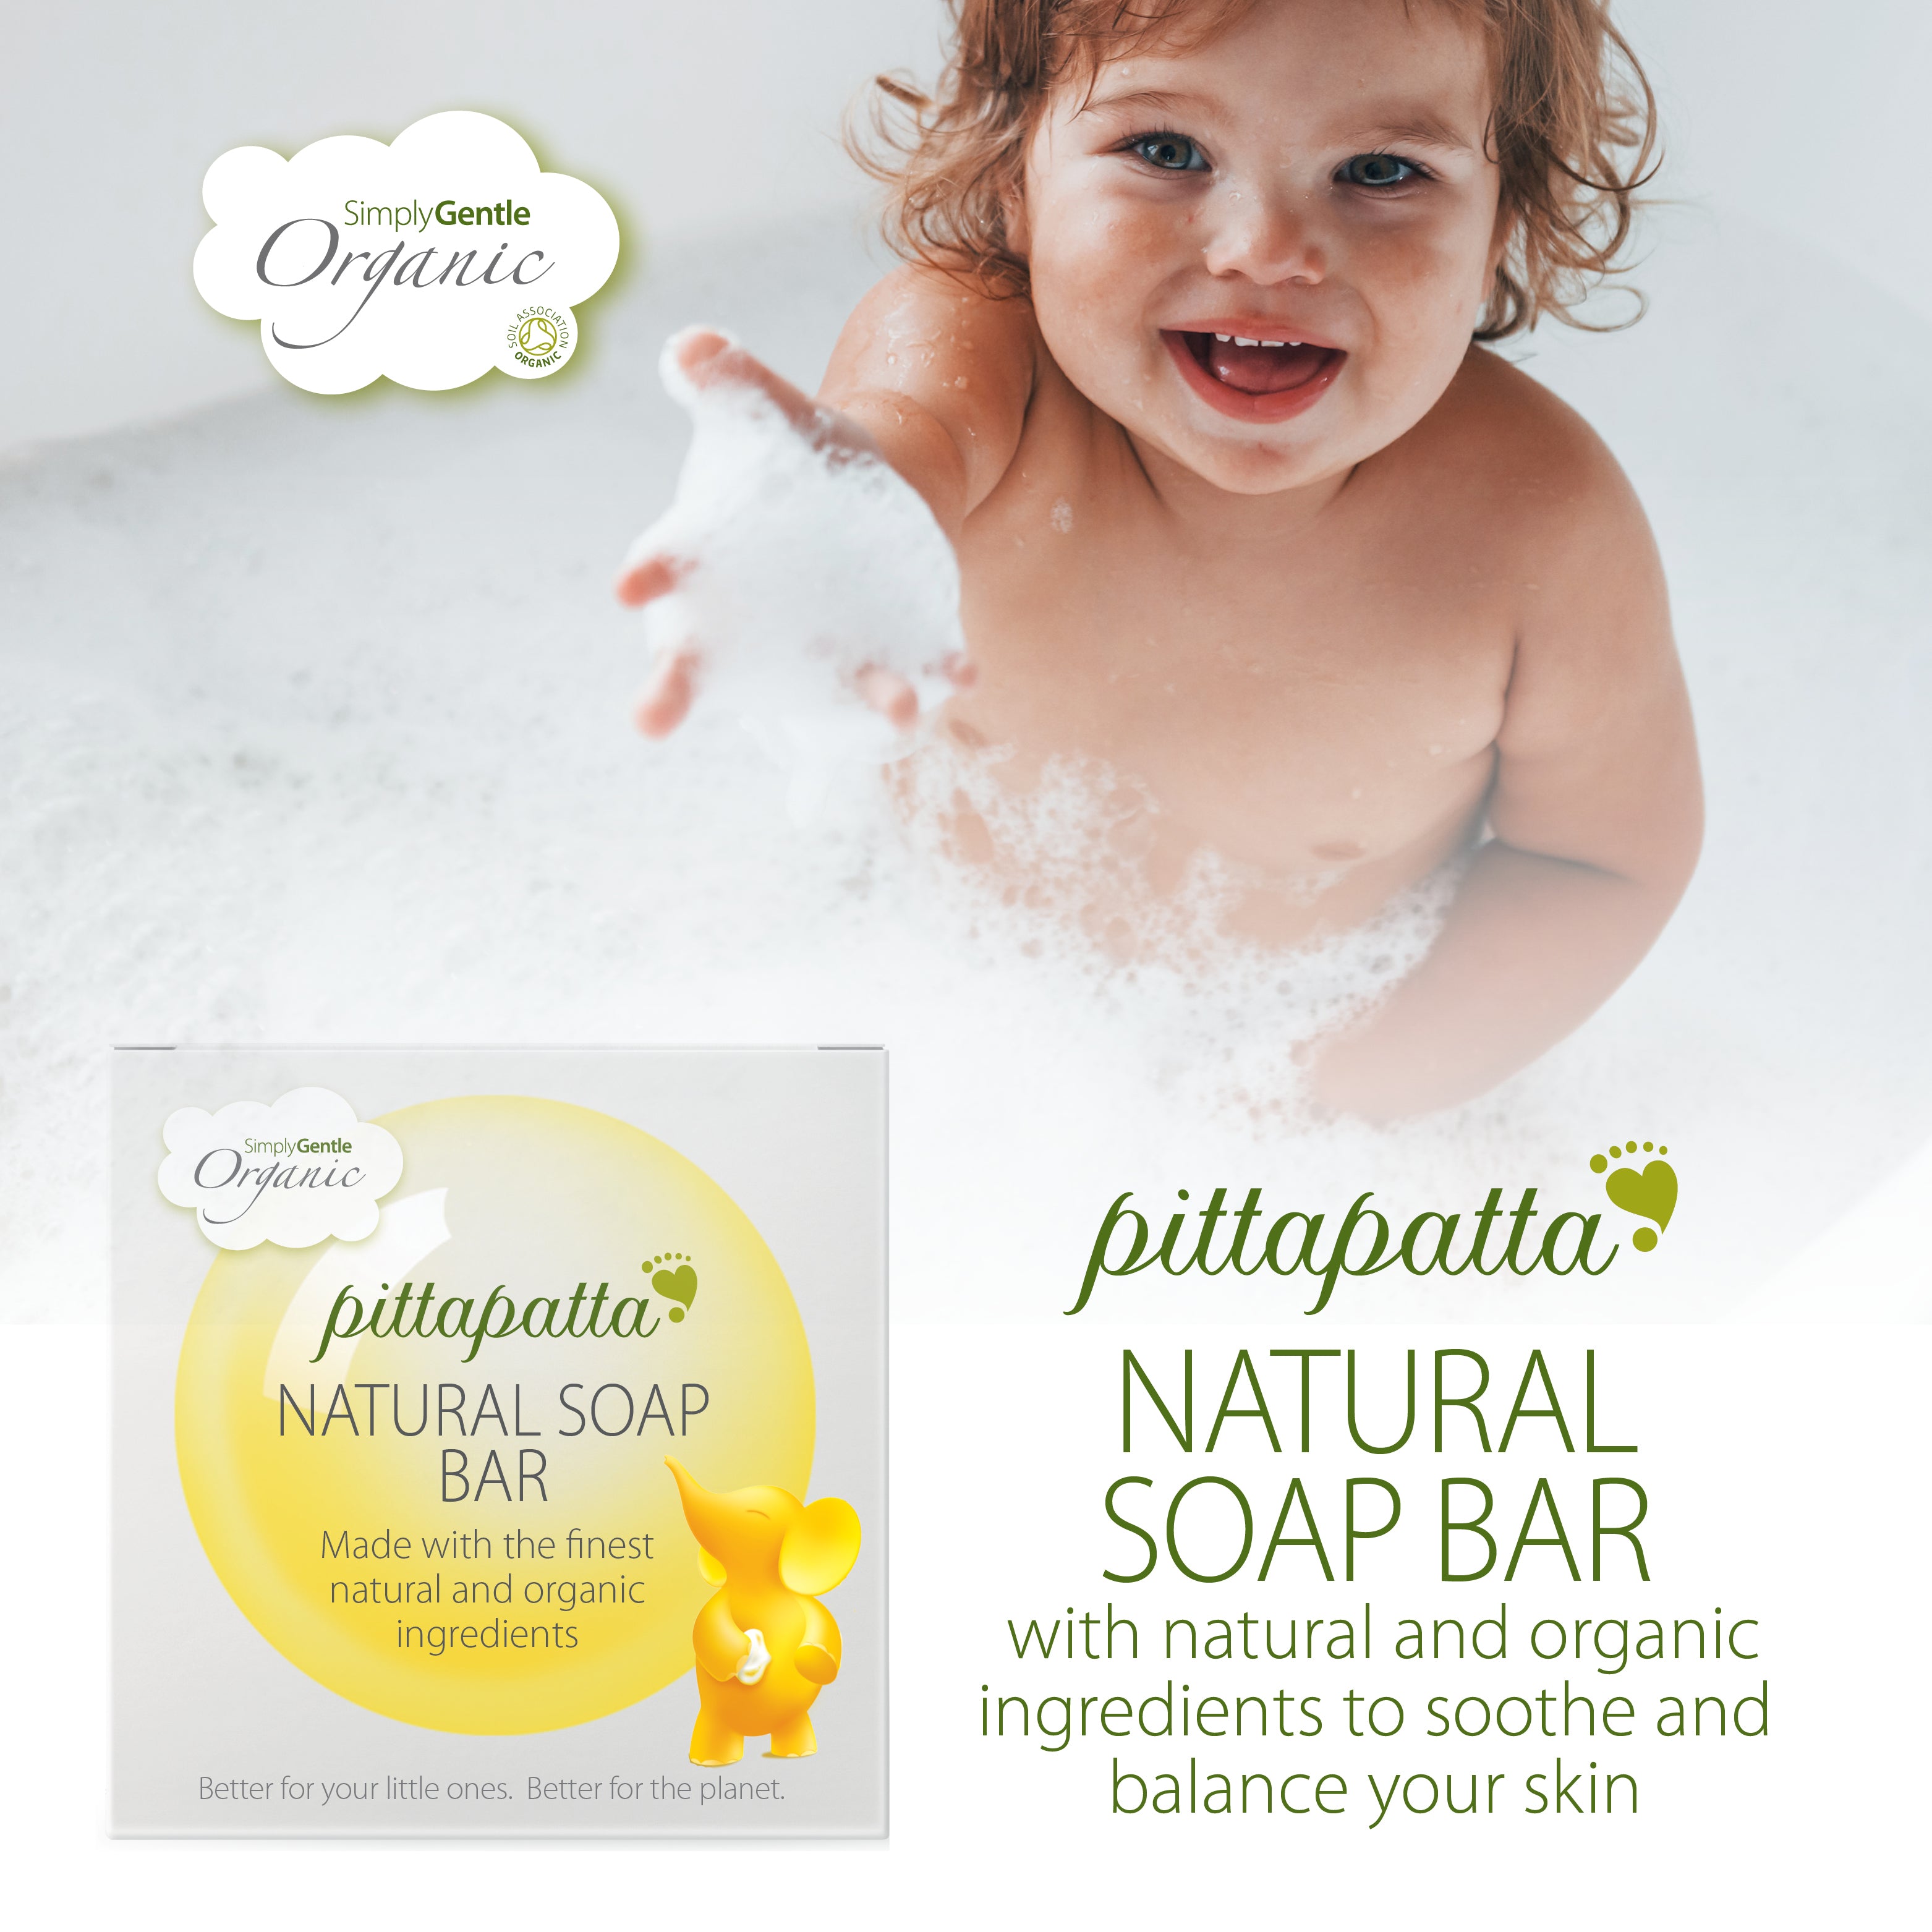 Pittapatta Natural Soap Bar